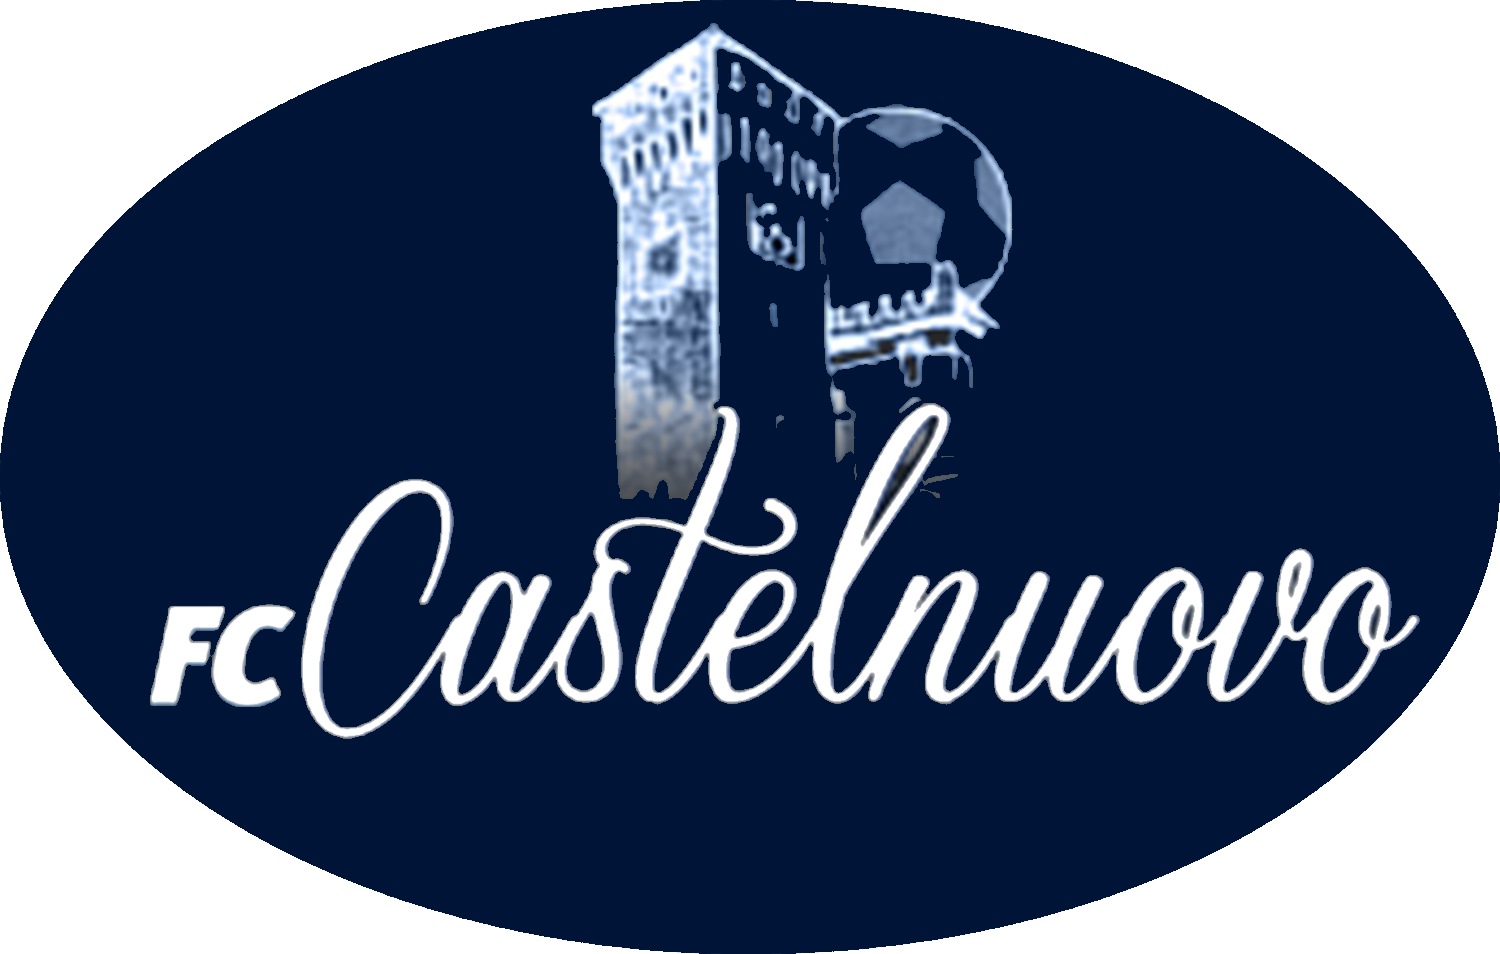 FC CASTELNUOVO v ATLETICO SPM